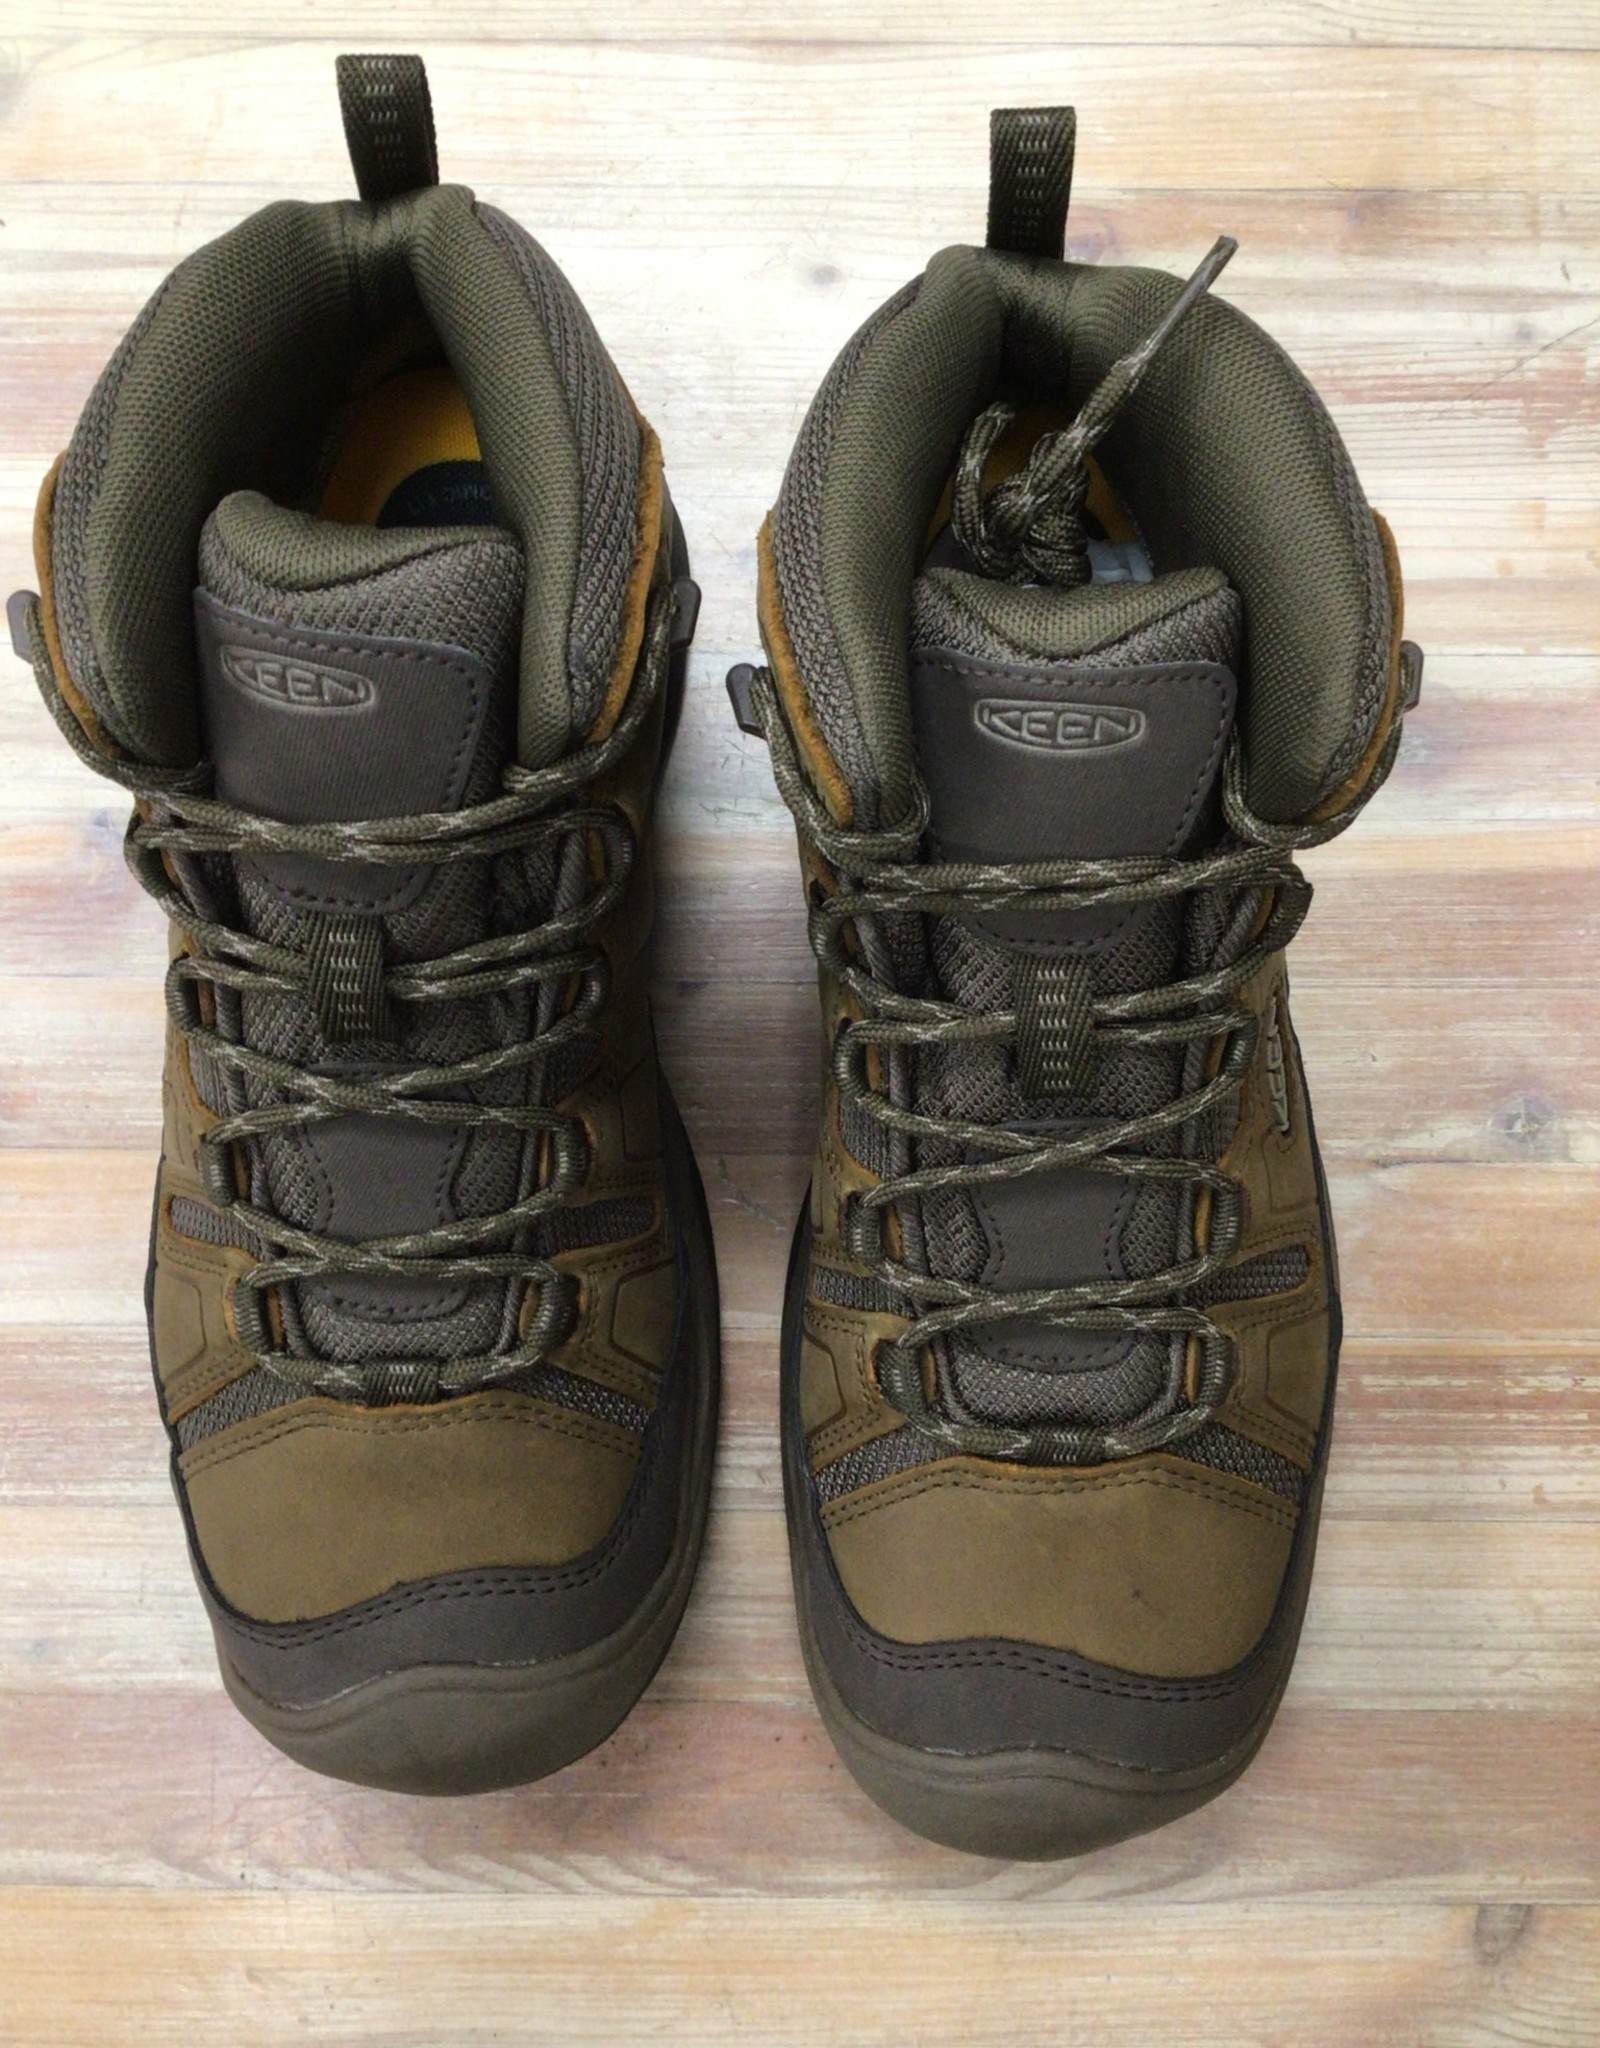 KEEN Circadia Mid Waterproof Hiking Boot - Men's - Footwear